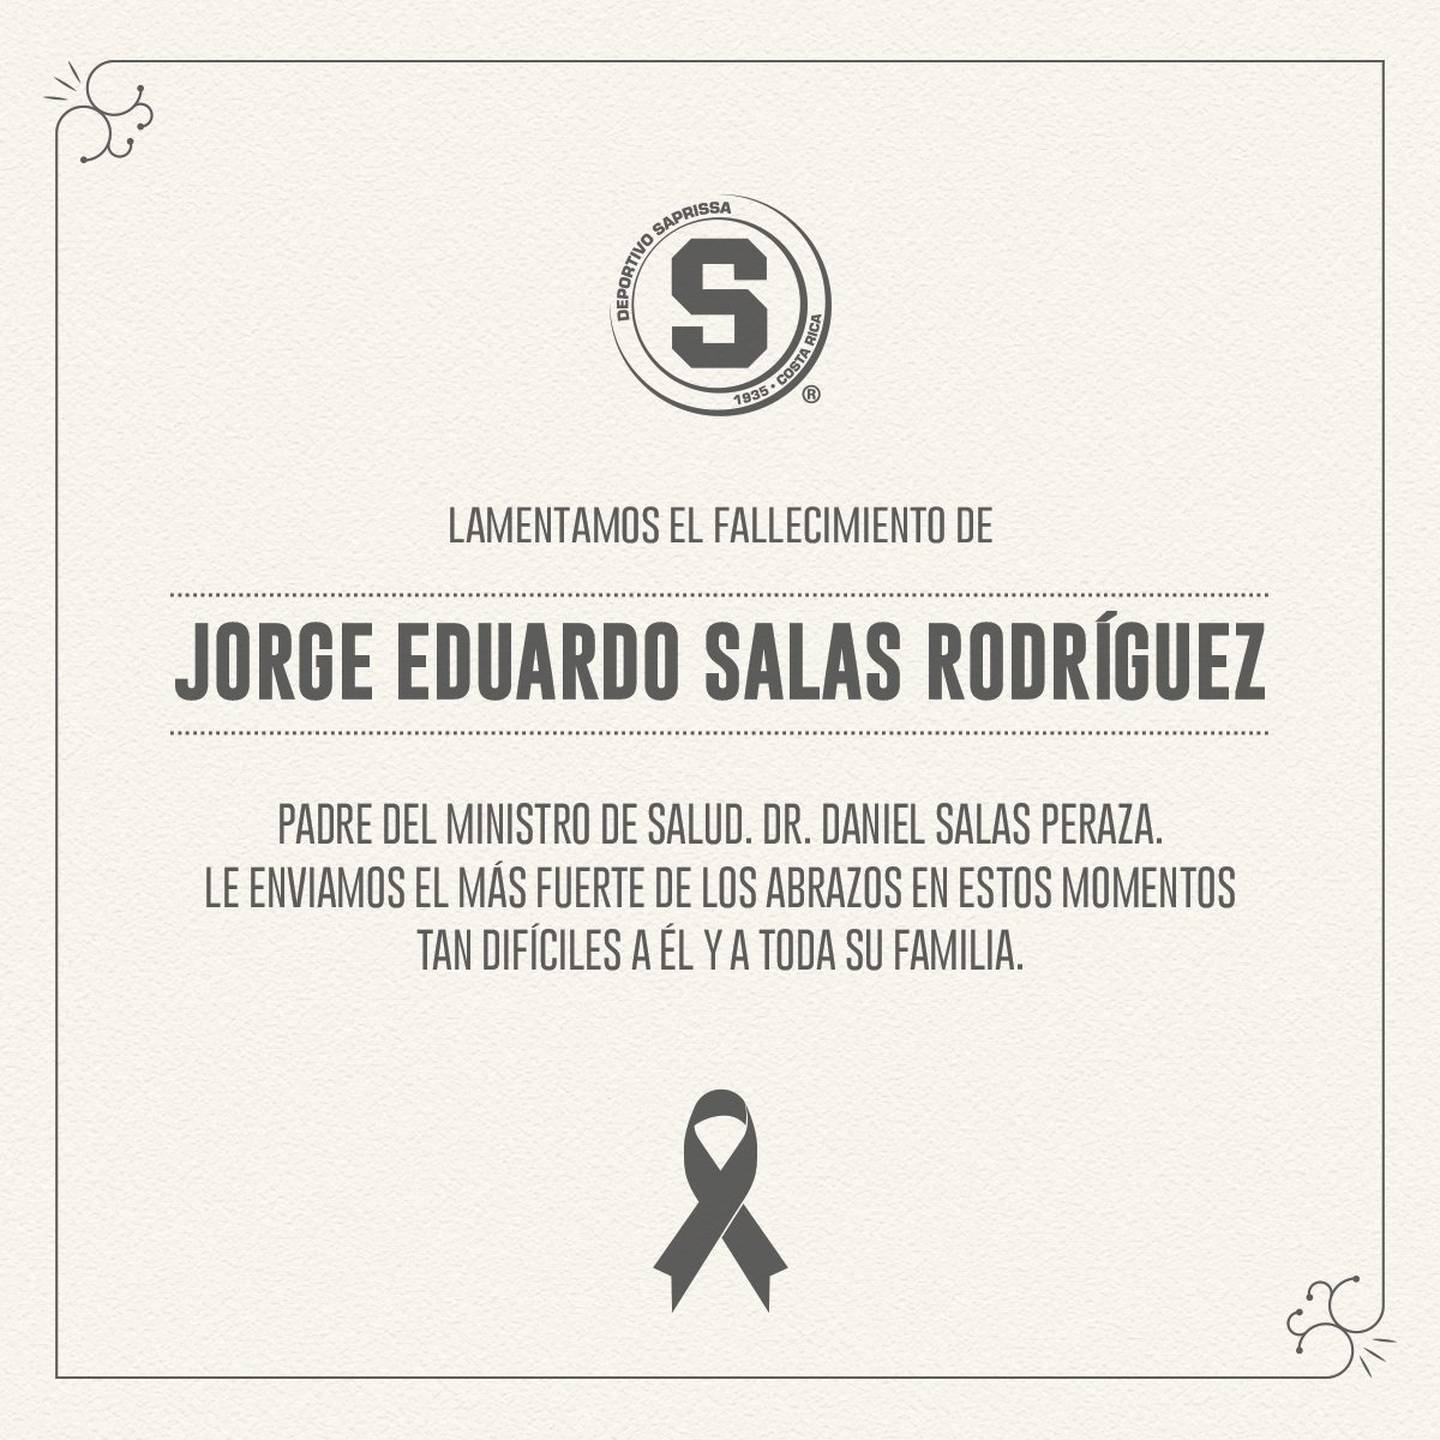 El Deportivo Saprissa realizó una esquela que publicó en Facebook por el fallecimiento de don Jorge Eduardo Salas, papá del ministro de Salud, Daniel  Salas